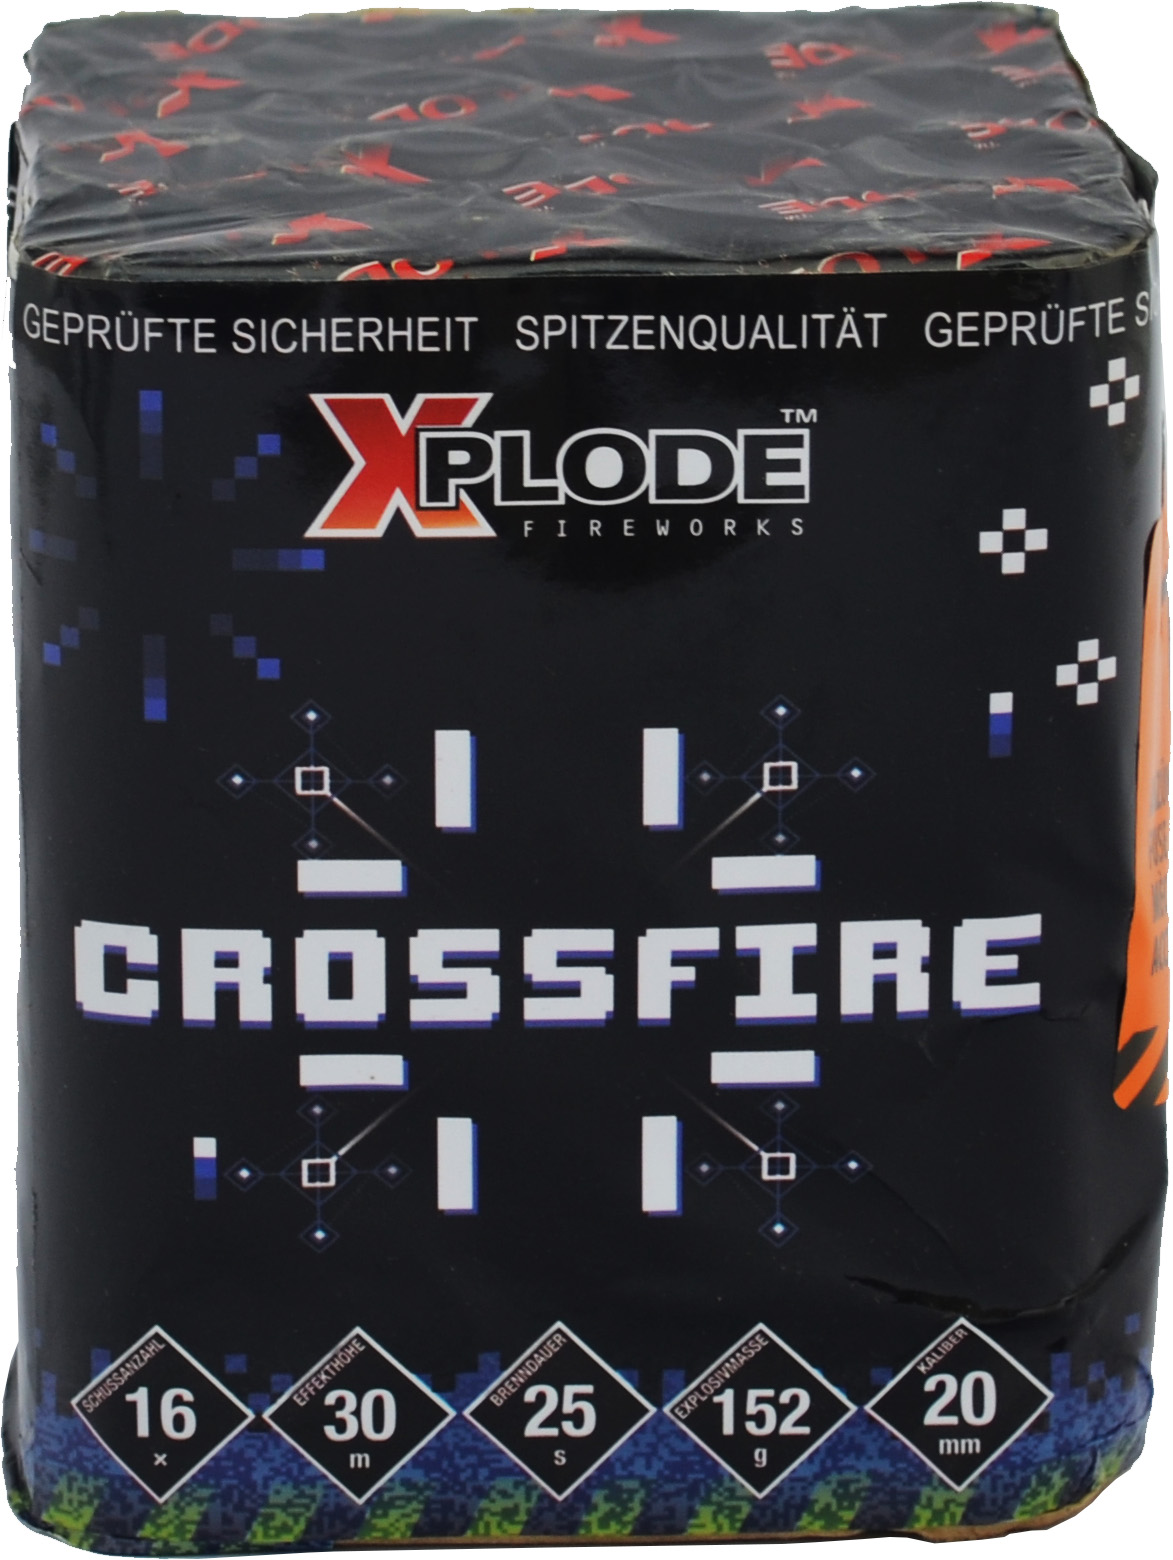 Xplode | Crossfire Crossette | 16-Schuss